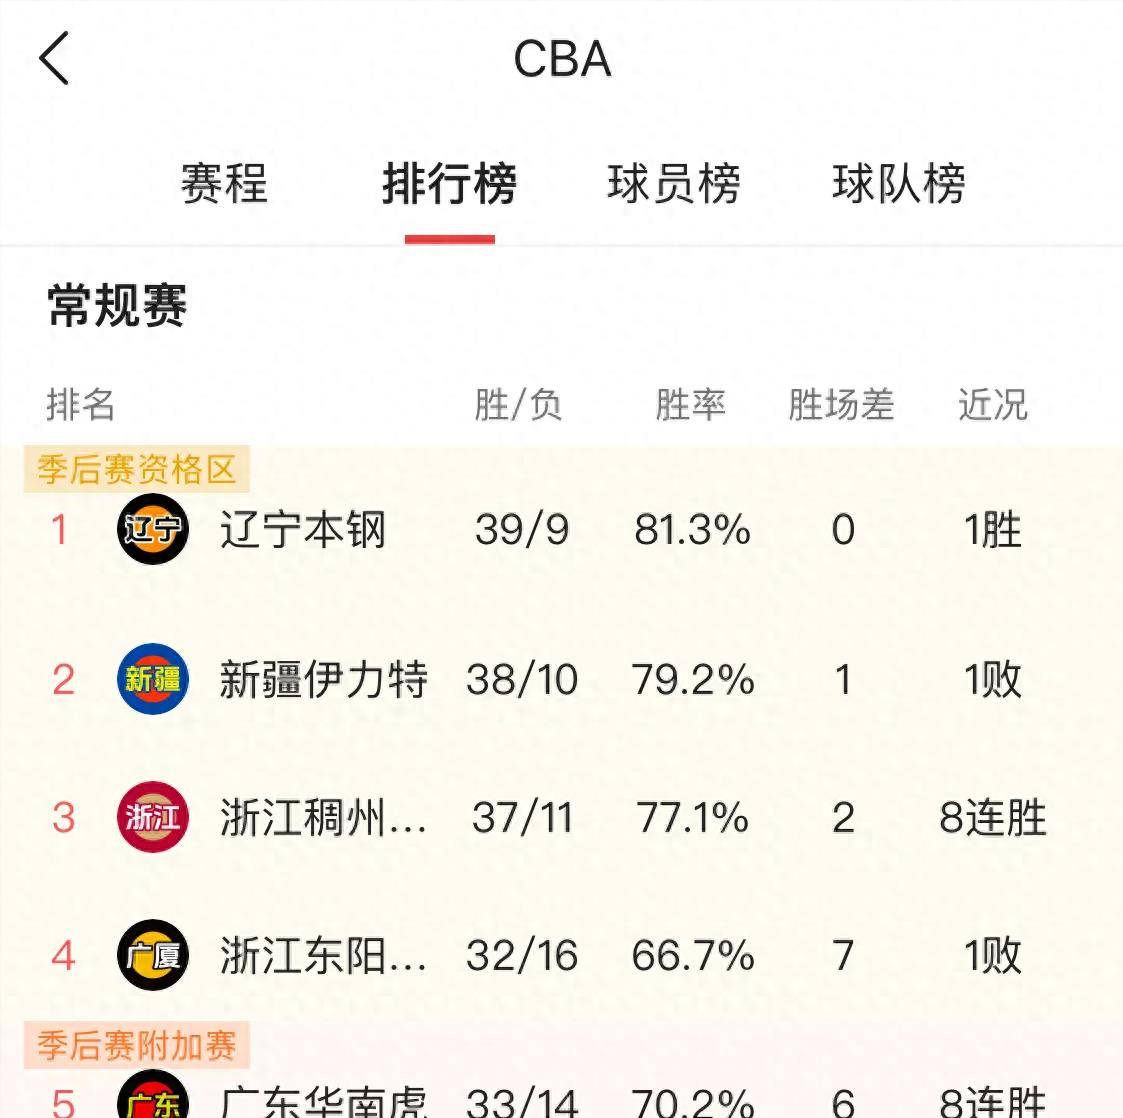 原创cba最新排名辽宁基本锁定常规赛冠军新疆与浙江争夺第二